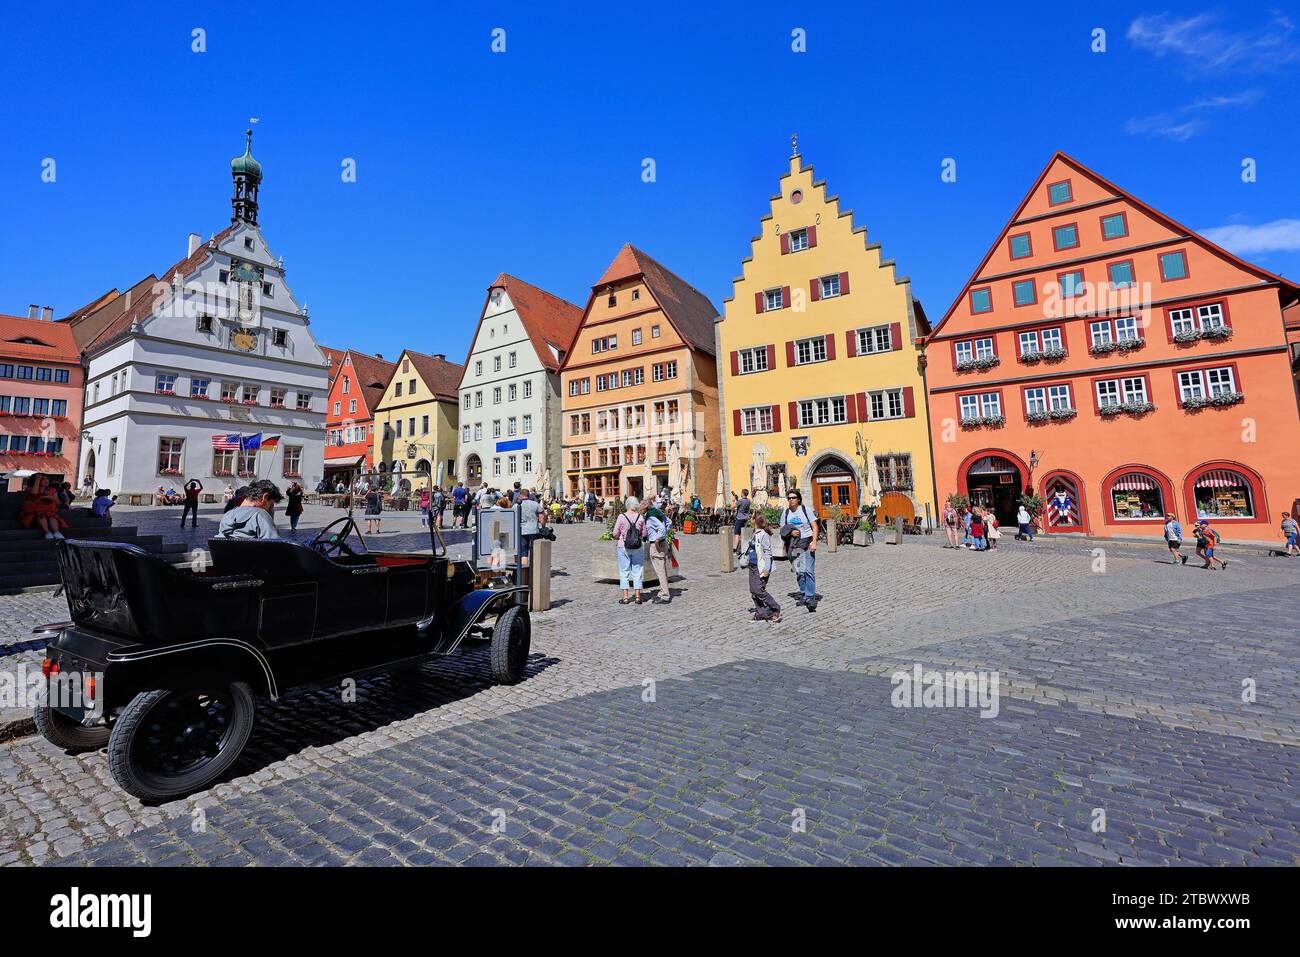 Touriste appréciant Markplatz avec des maisons traditionnelles et voiture de collection au premier plan. Banque D'Images